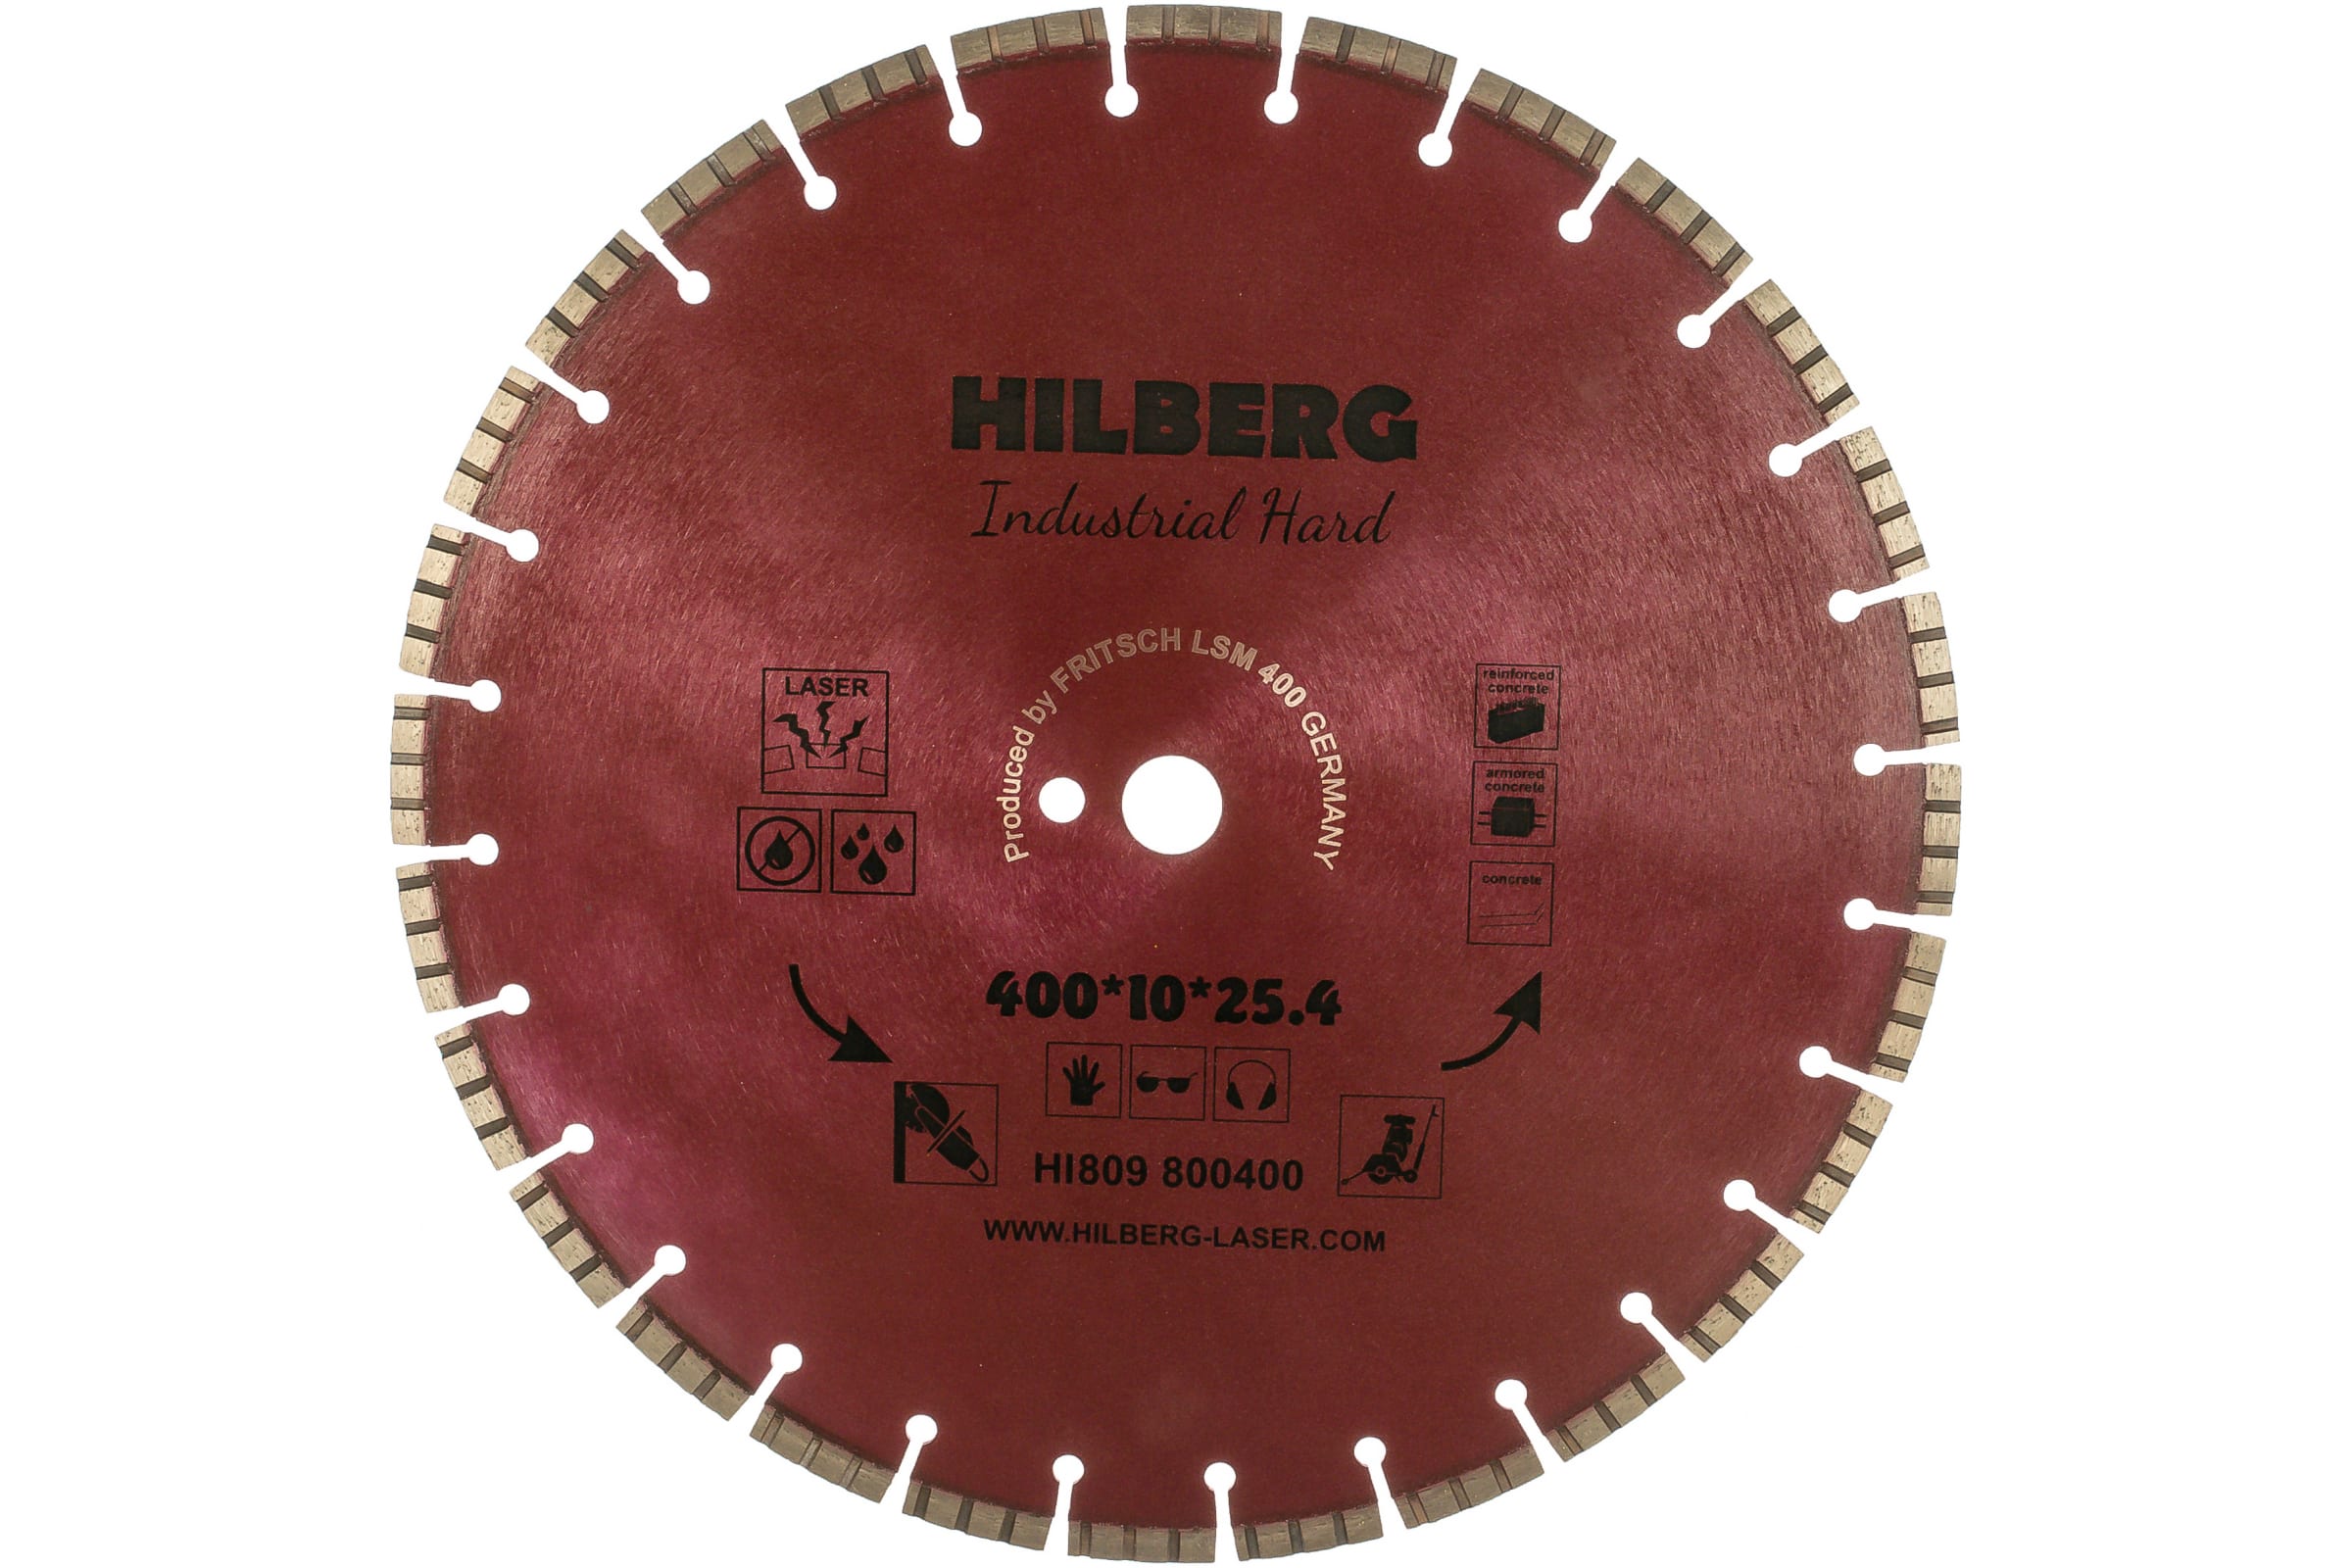 фото Hilberg диск алмазный отрезной 40025,412industrial hard hi809